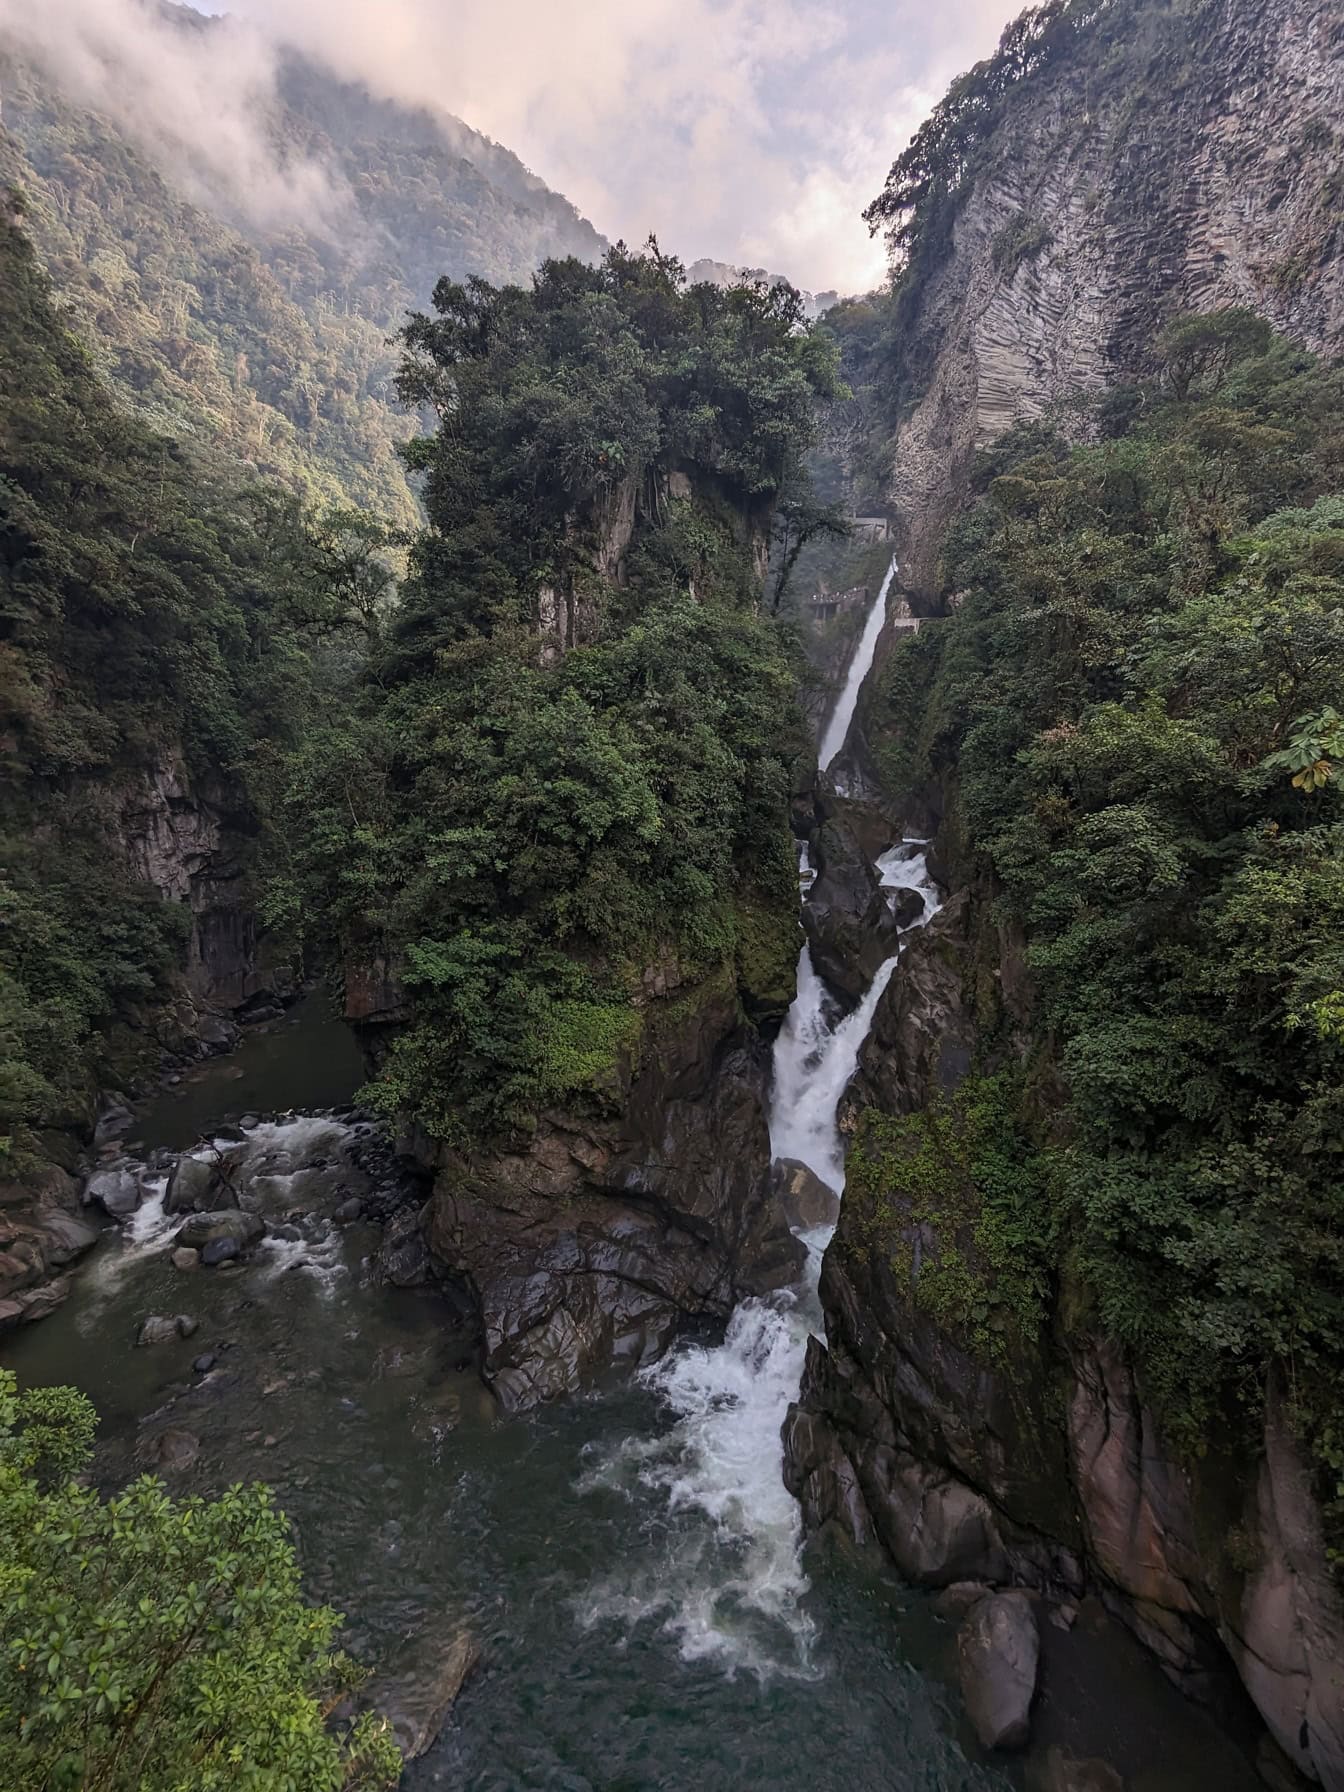 Diablov vodopád, prírodný zázrak v dažďovom pralese v pohorí Andy v prírodnom parku Ekvádoru